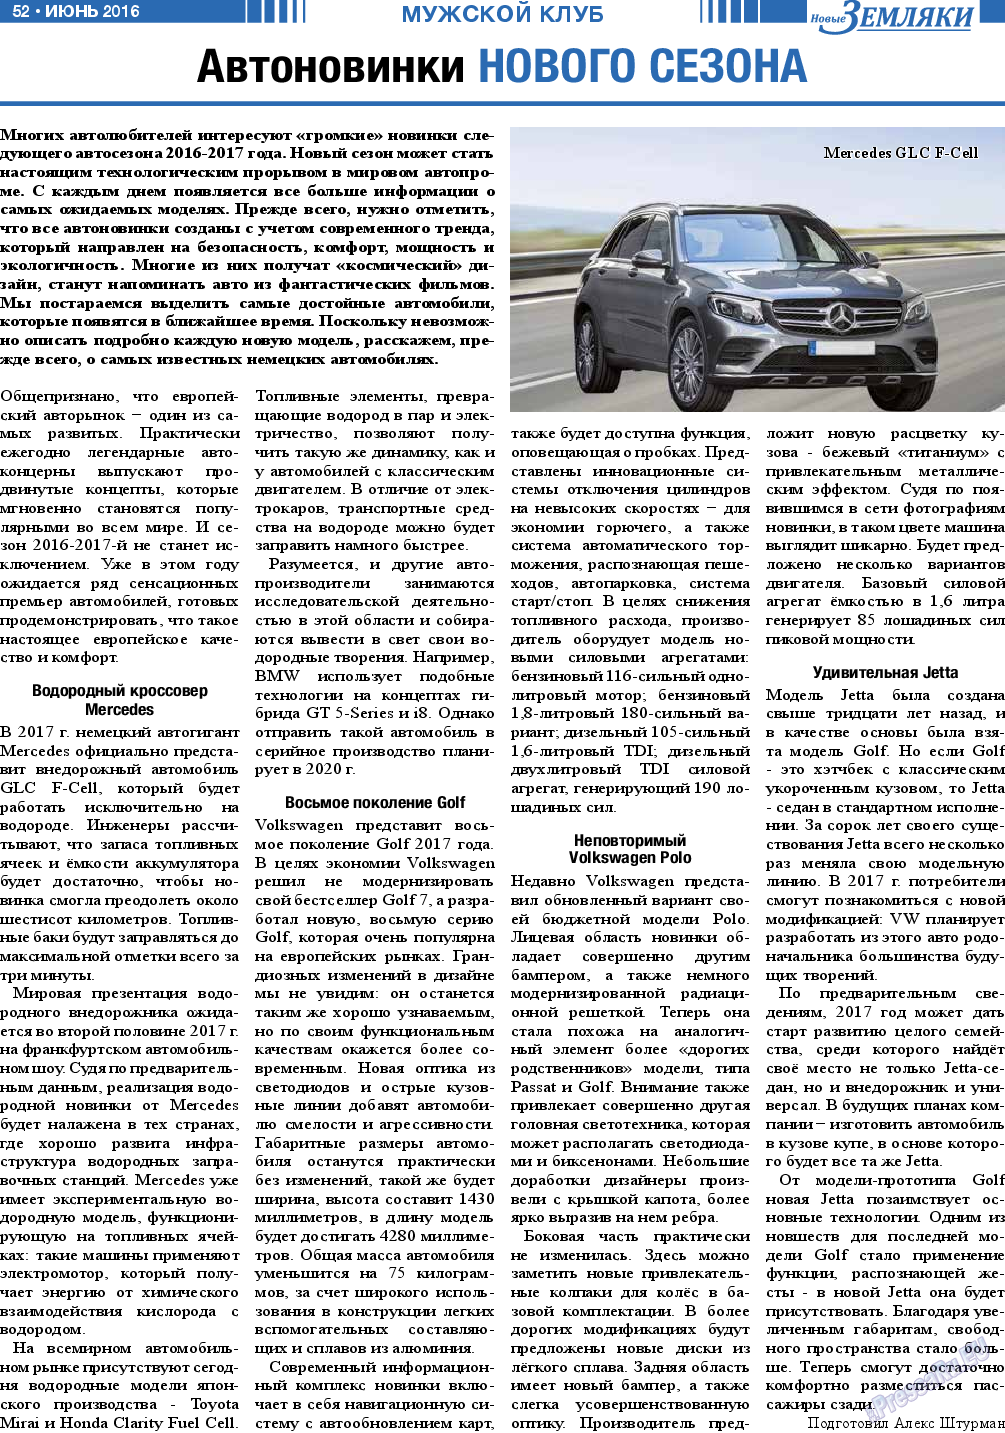 Новые Земляки, газета. 2016 №6 стр.52